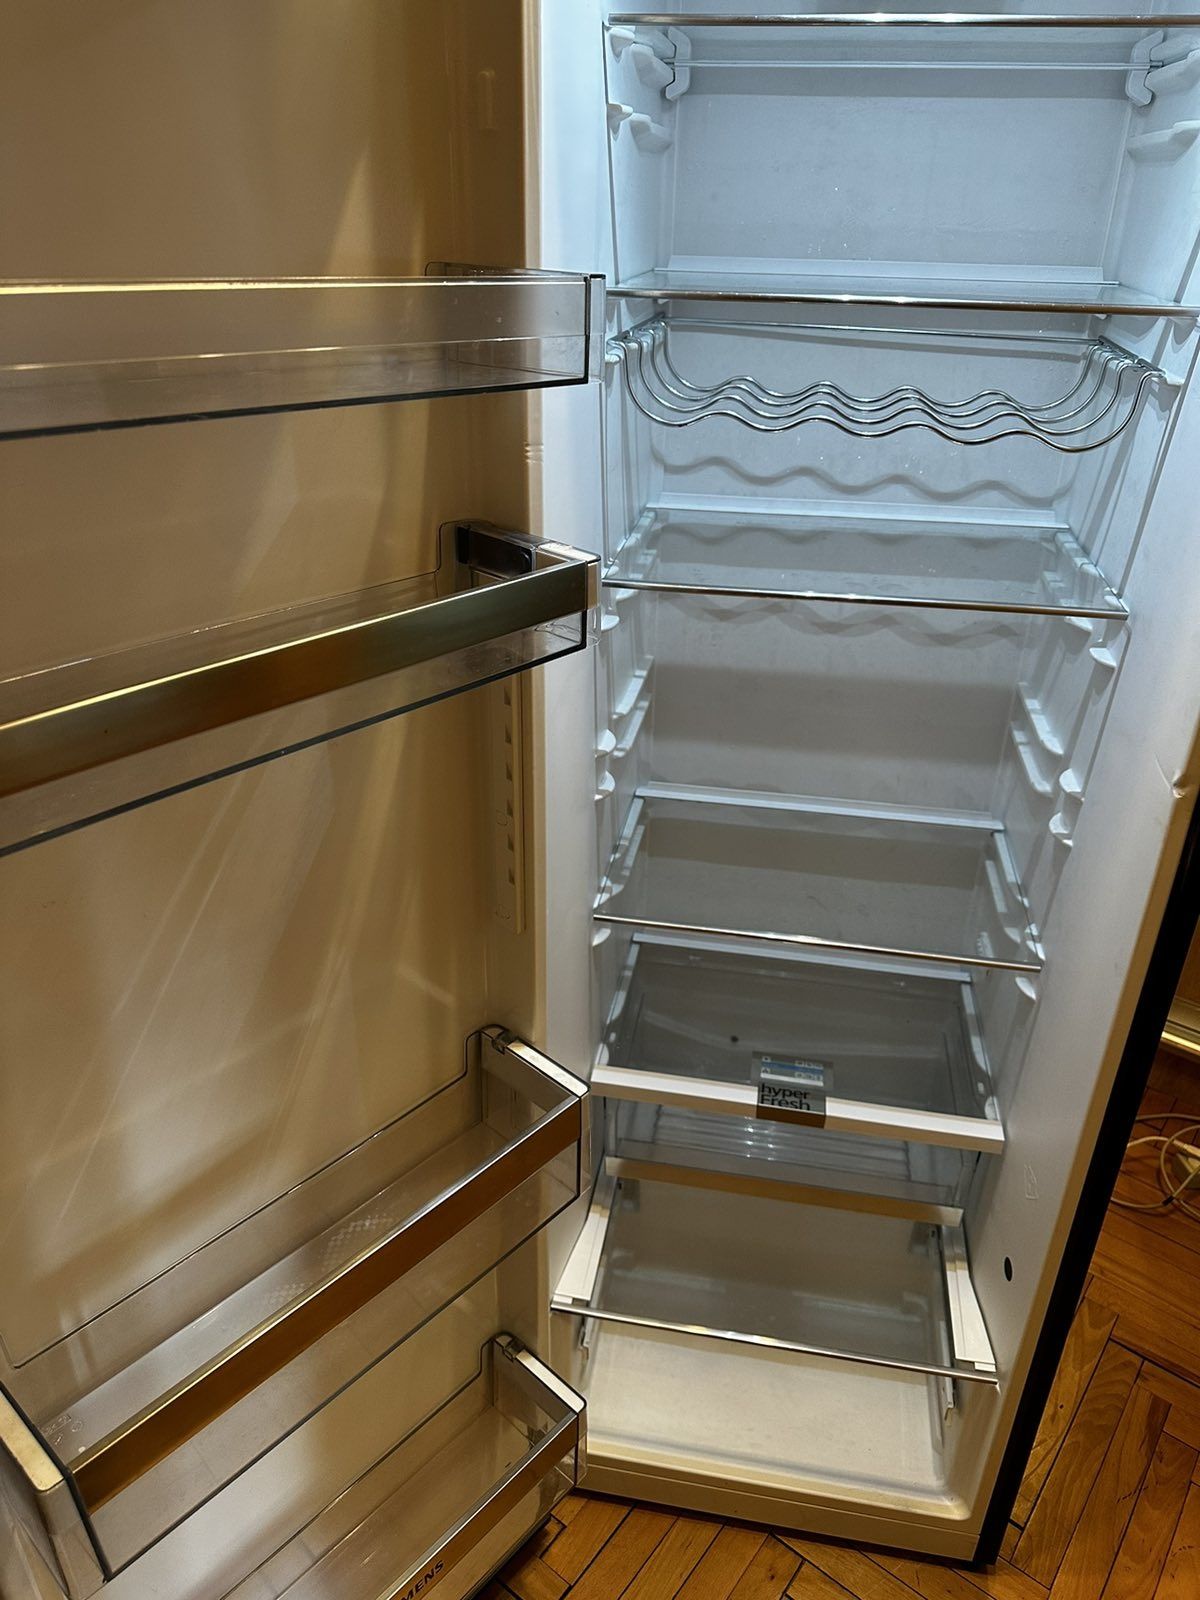 Топ однокамерний холодильник Siemens IQ500